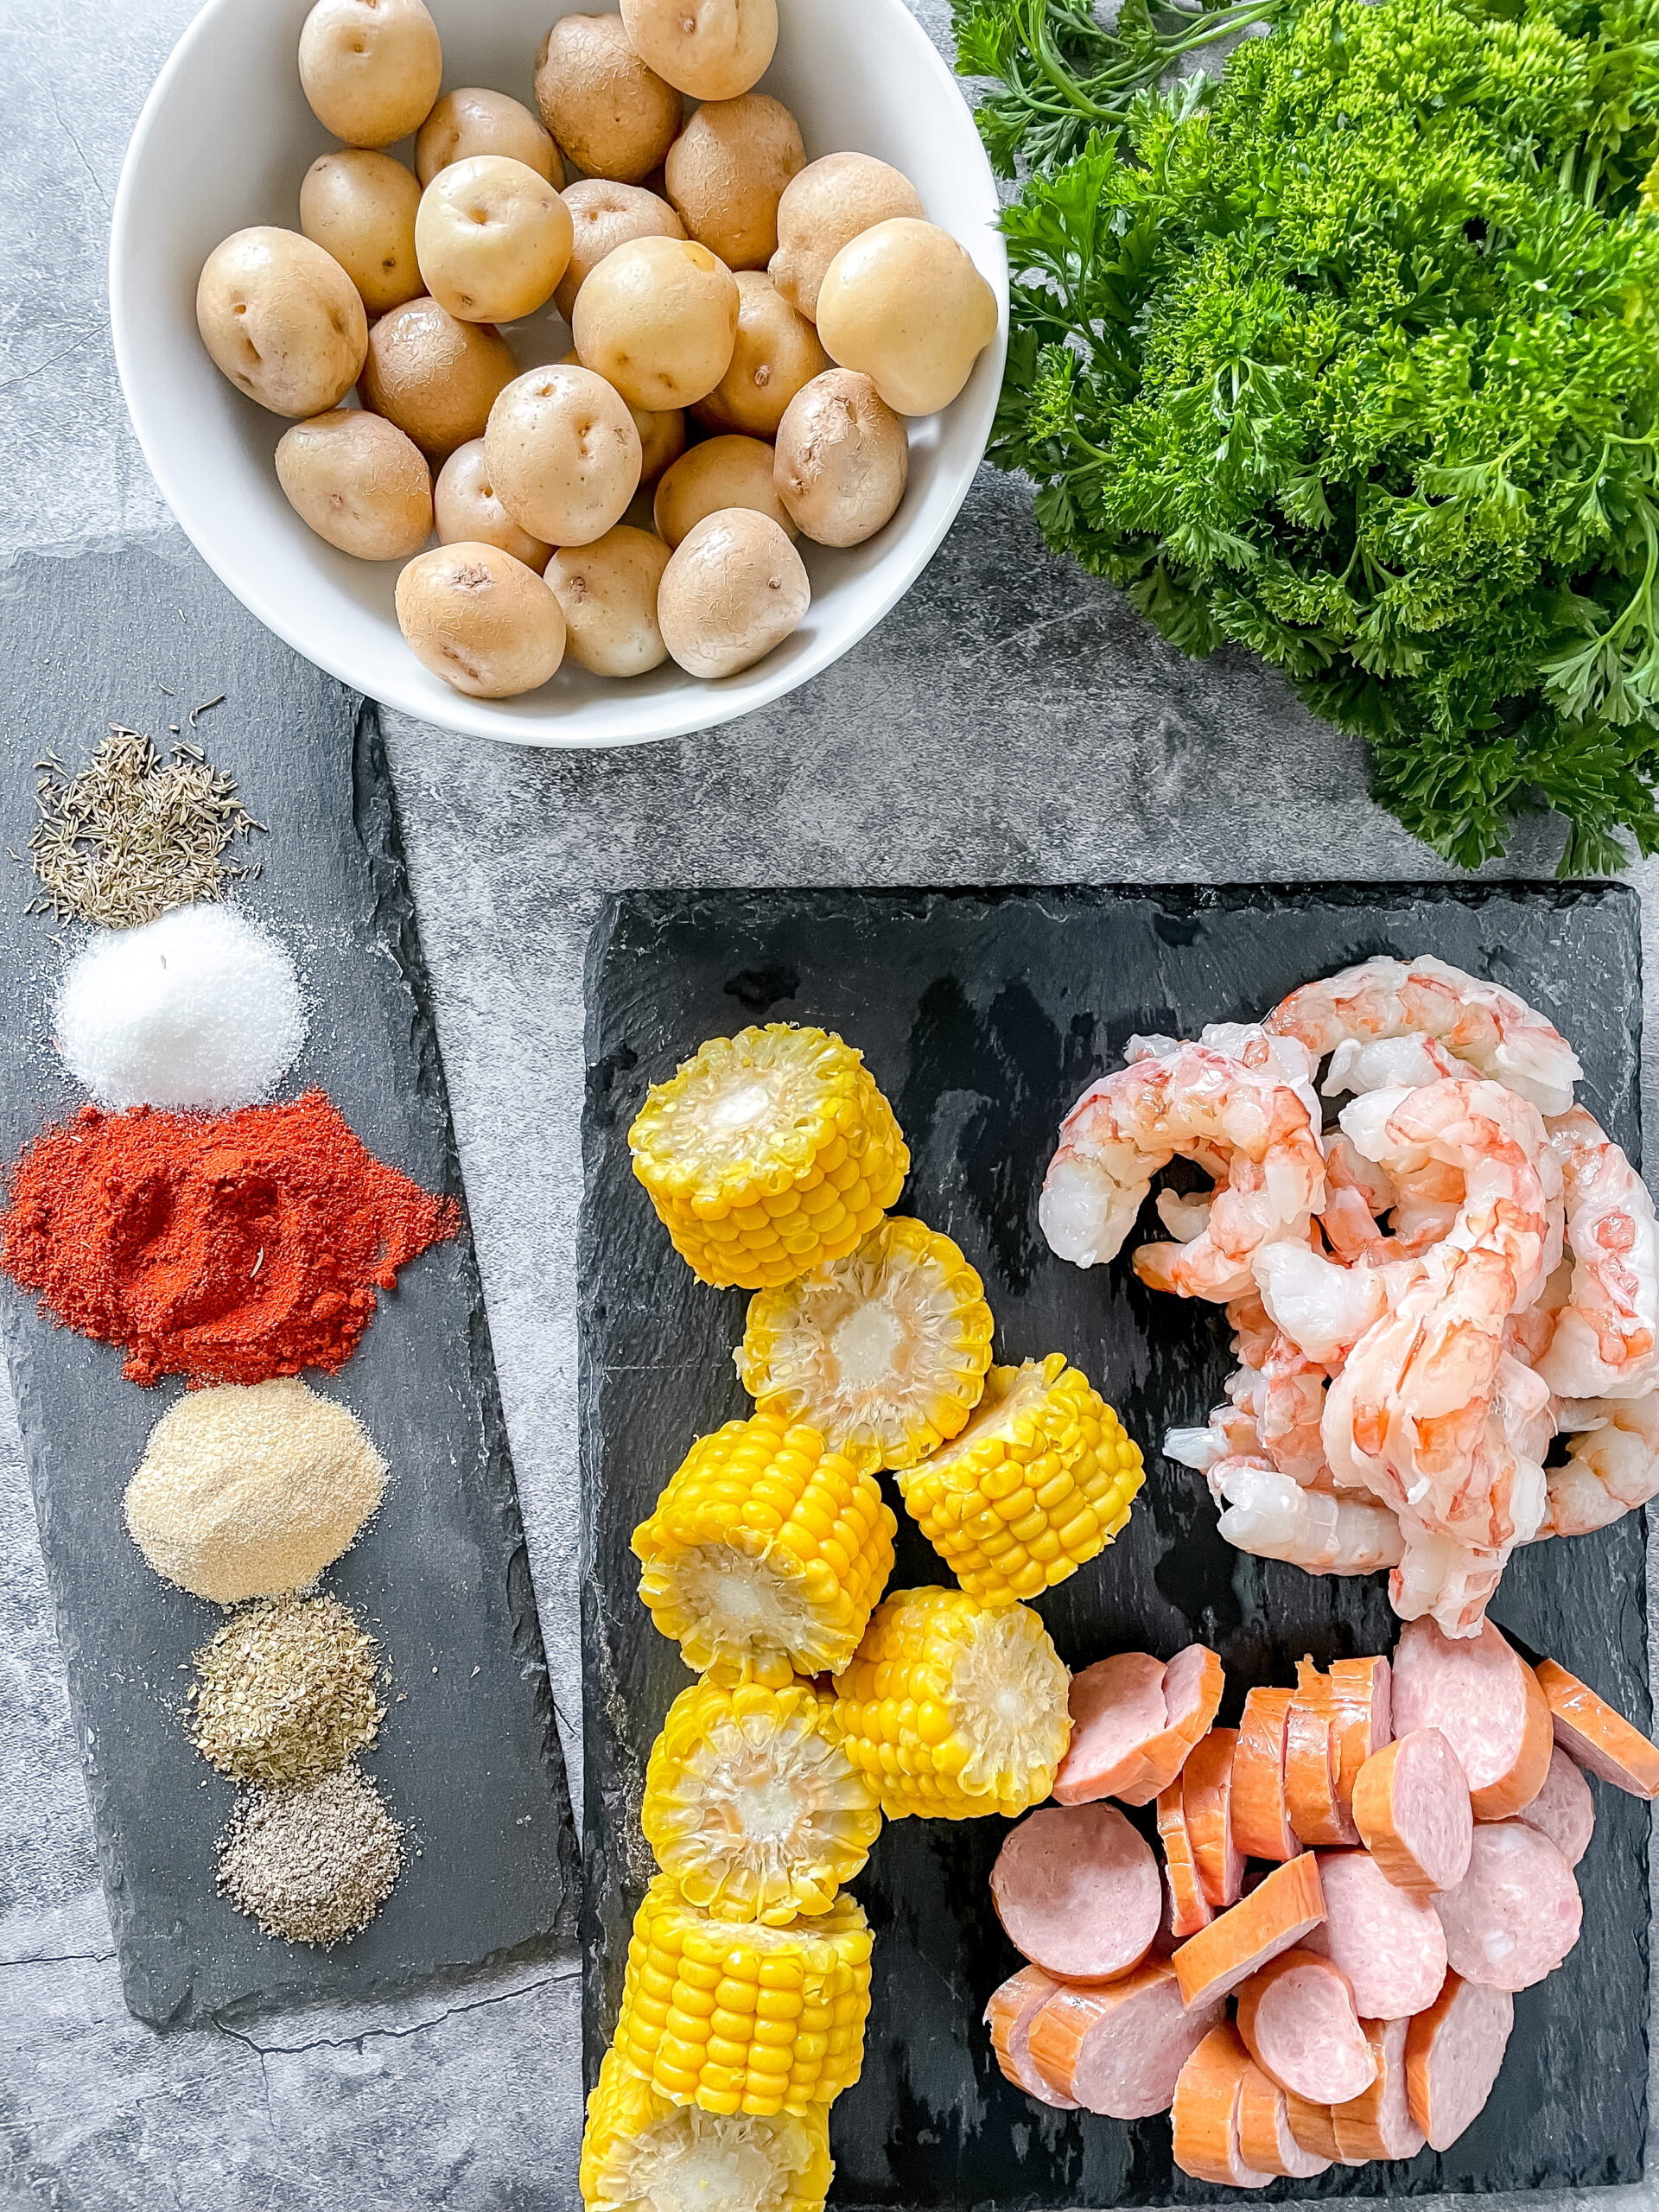 Ingredients for cajun boil in foil. parsley, potatoes, seasonings, shrimp. sausage and corn